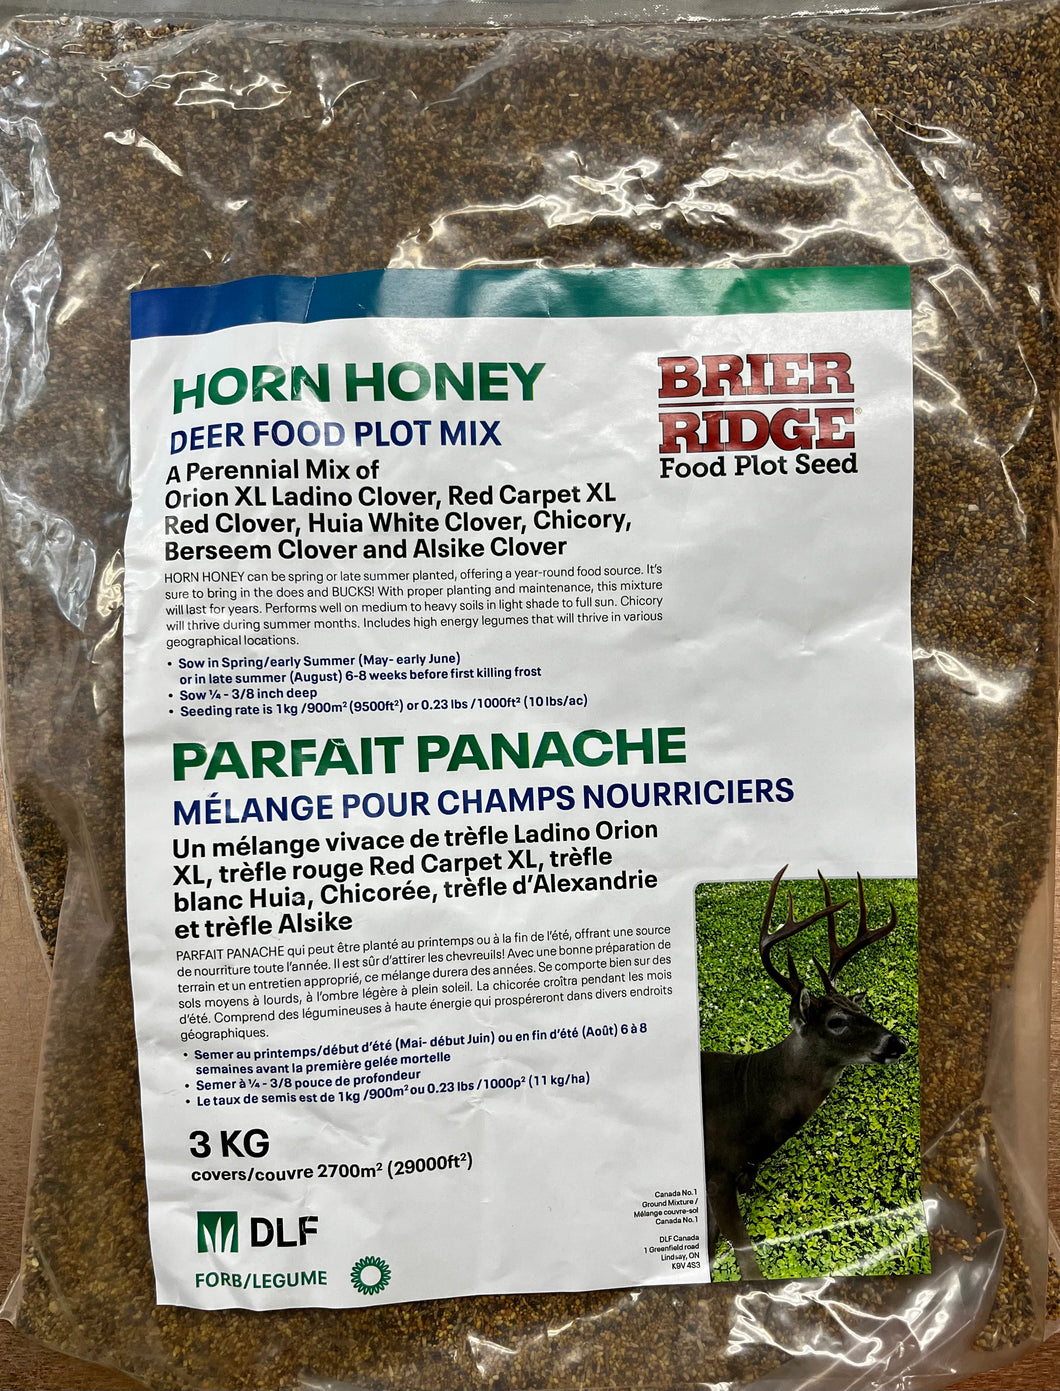 Brier Ridge Horn Honey Deer Plot Mix